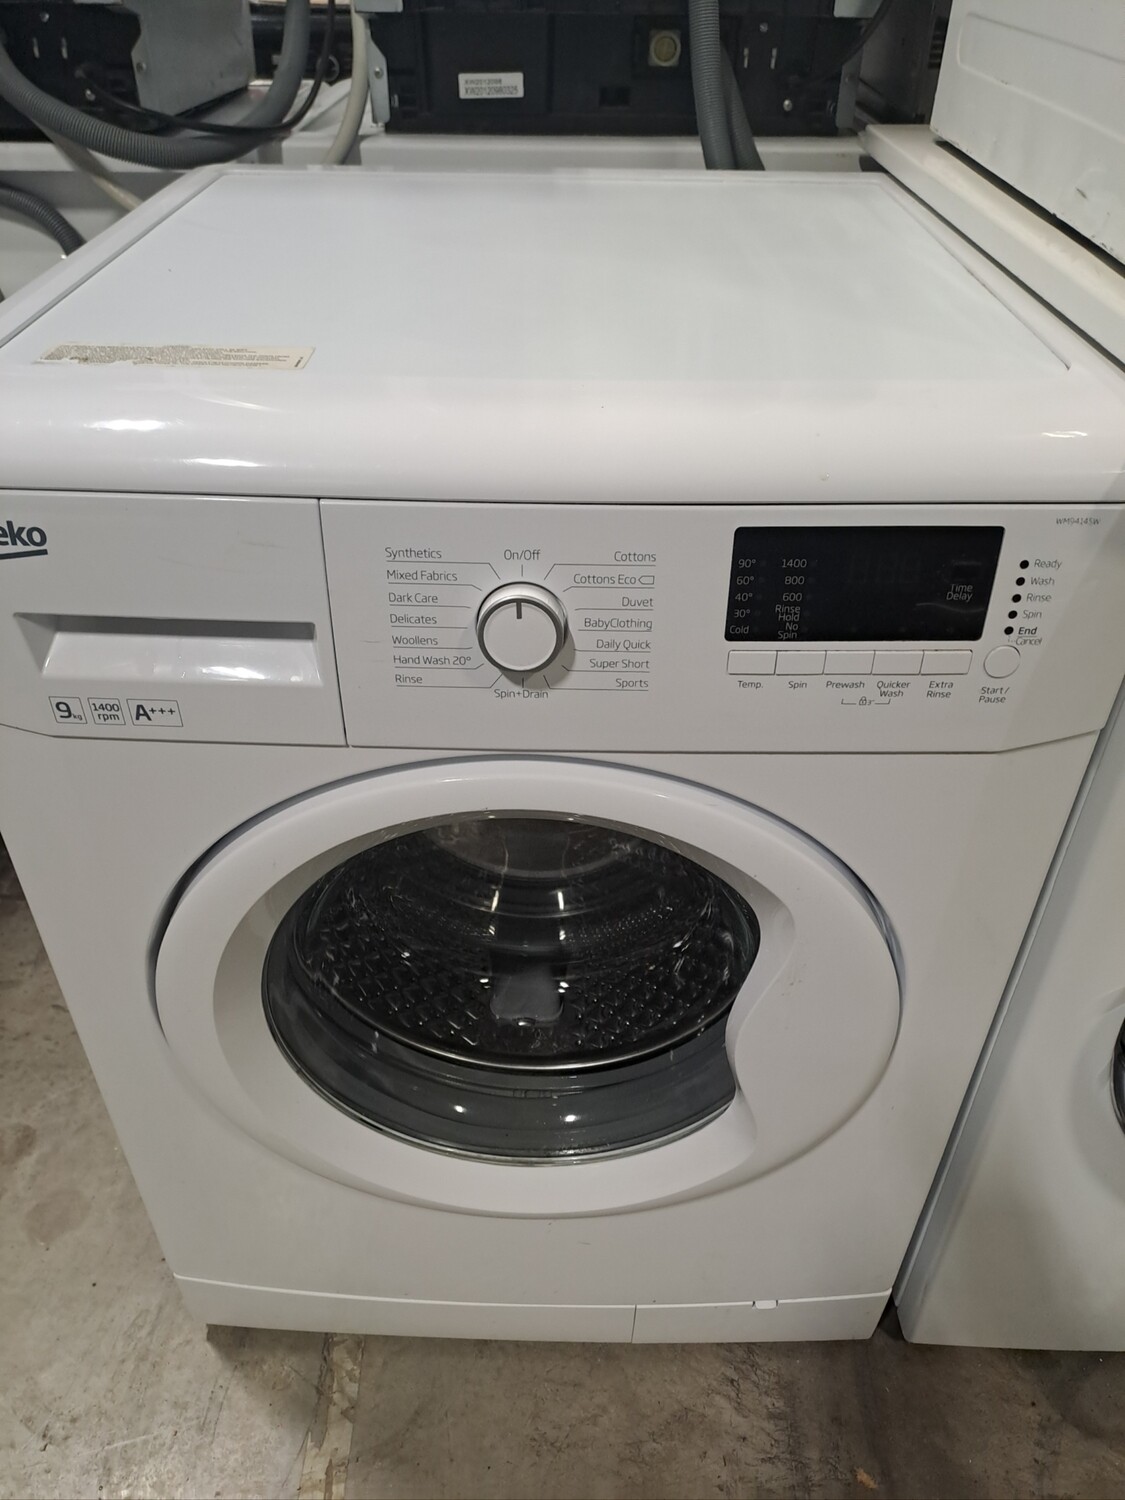 Beko WM94145W 9kg Load 1400 Spin Washing Machine - White - Refurbished - 6 Month Guarantee